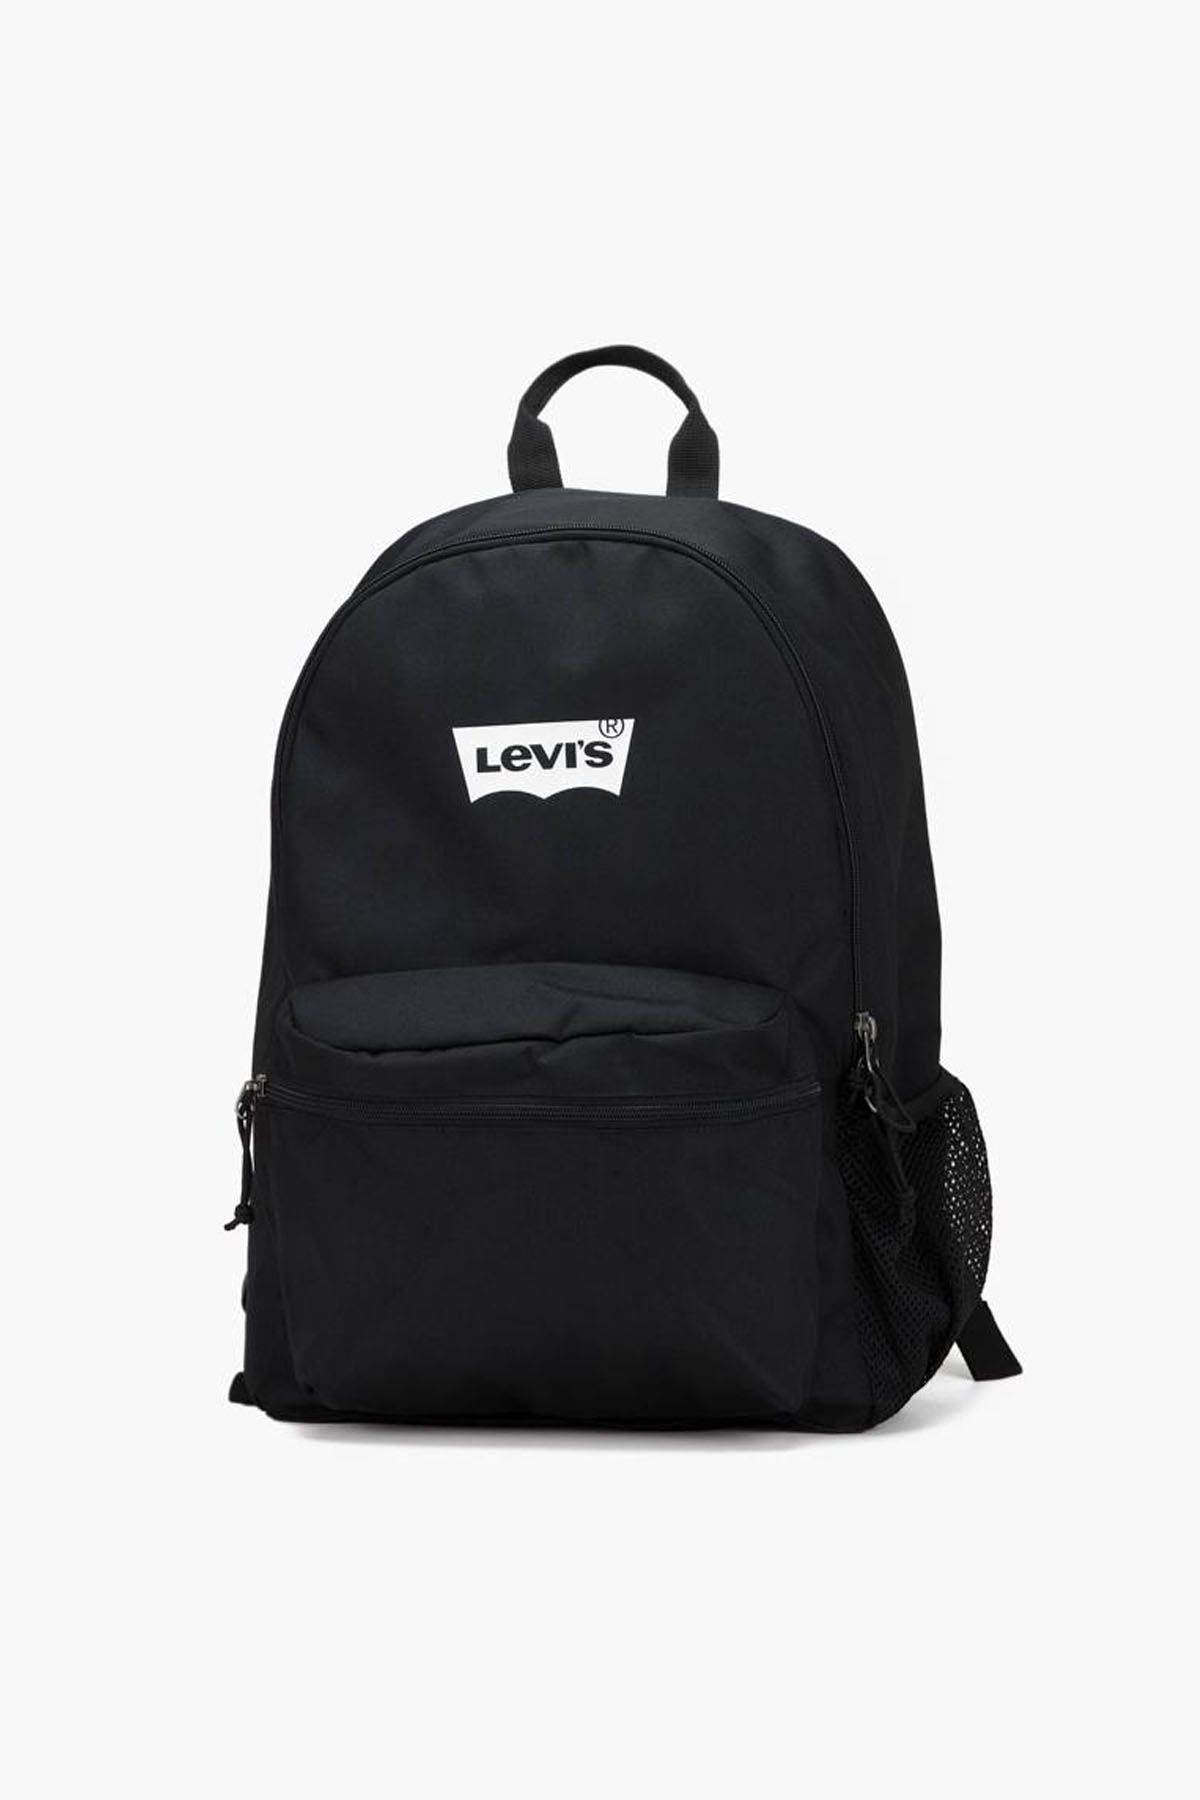 Levi's ® Levi's Men's Basic Backpack Black Men Backpacks